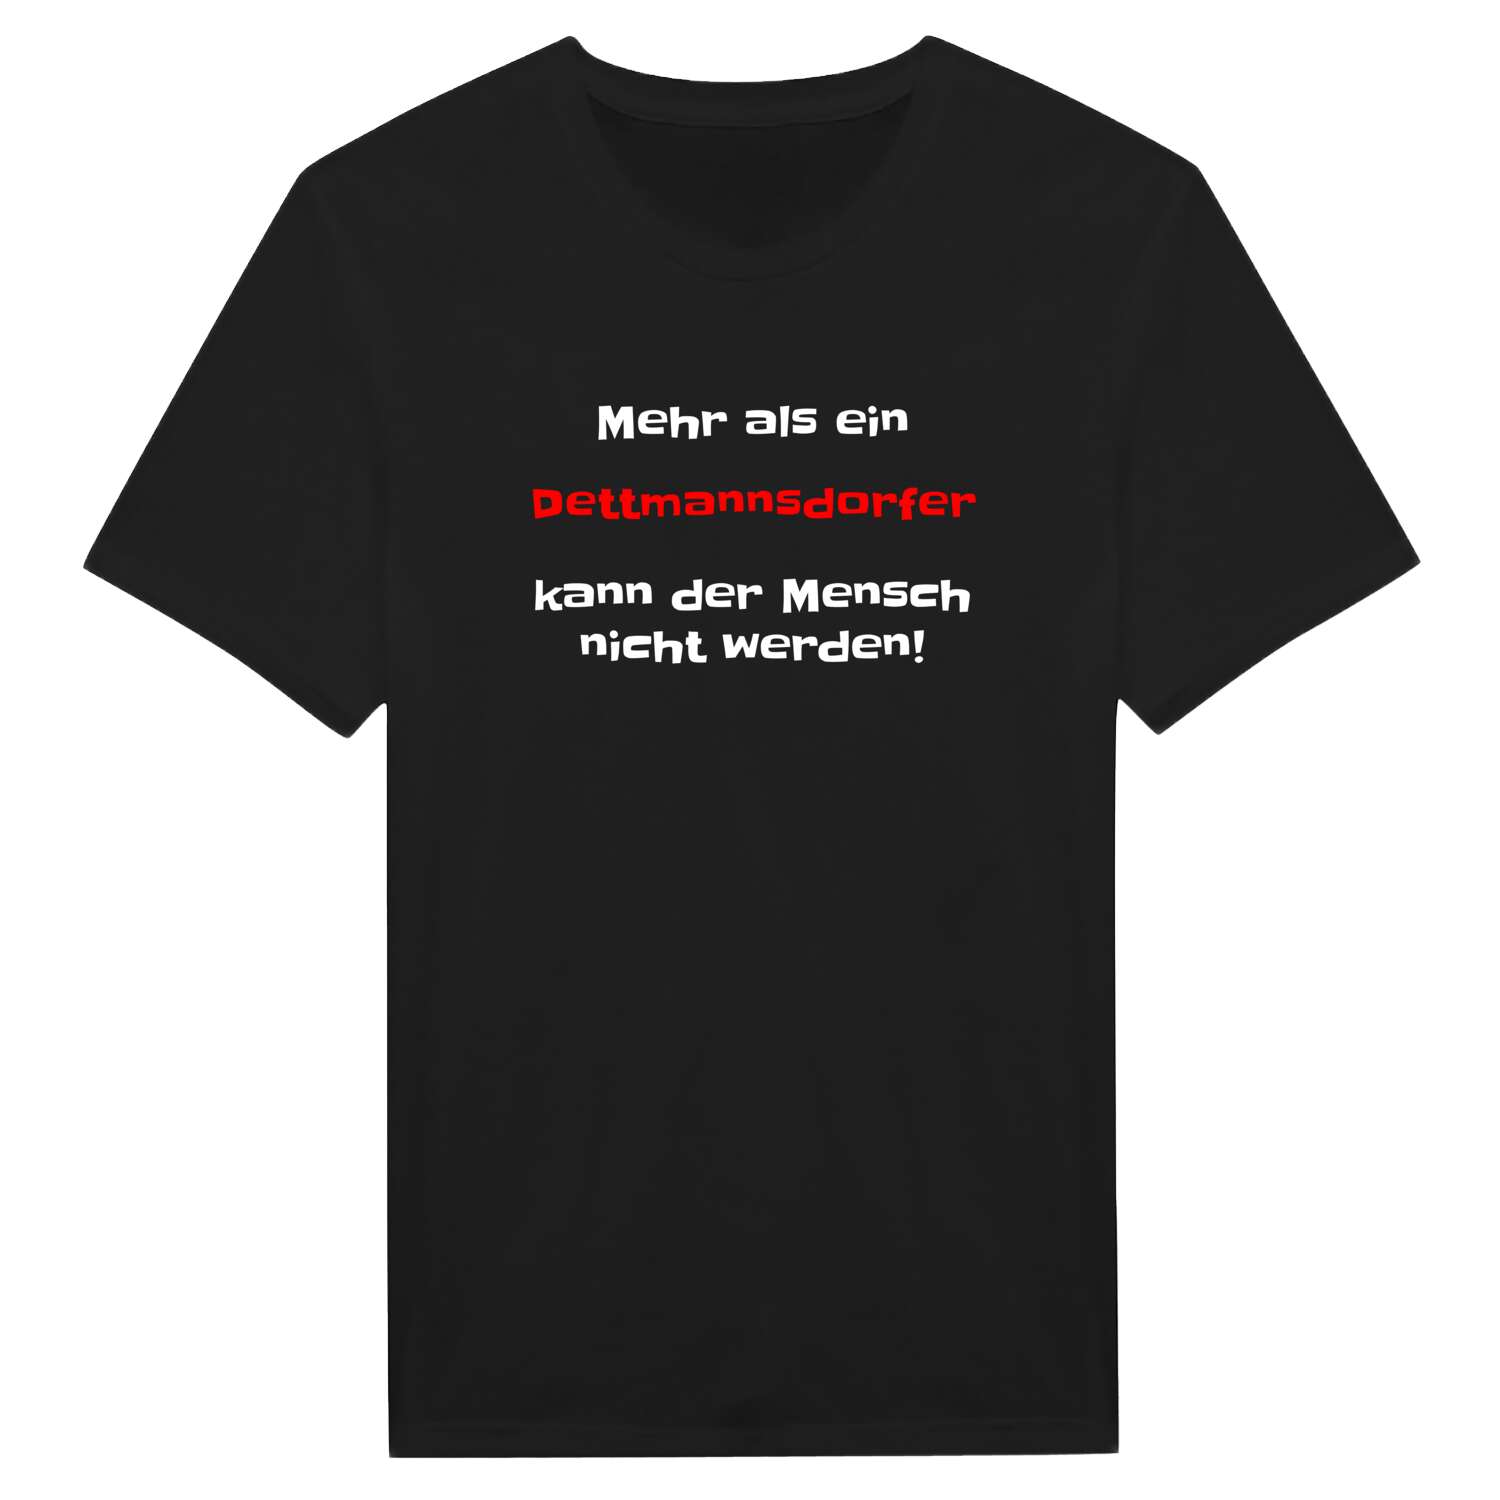 Dettmannsdorf T-Shirt »Mehr als ein«